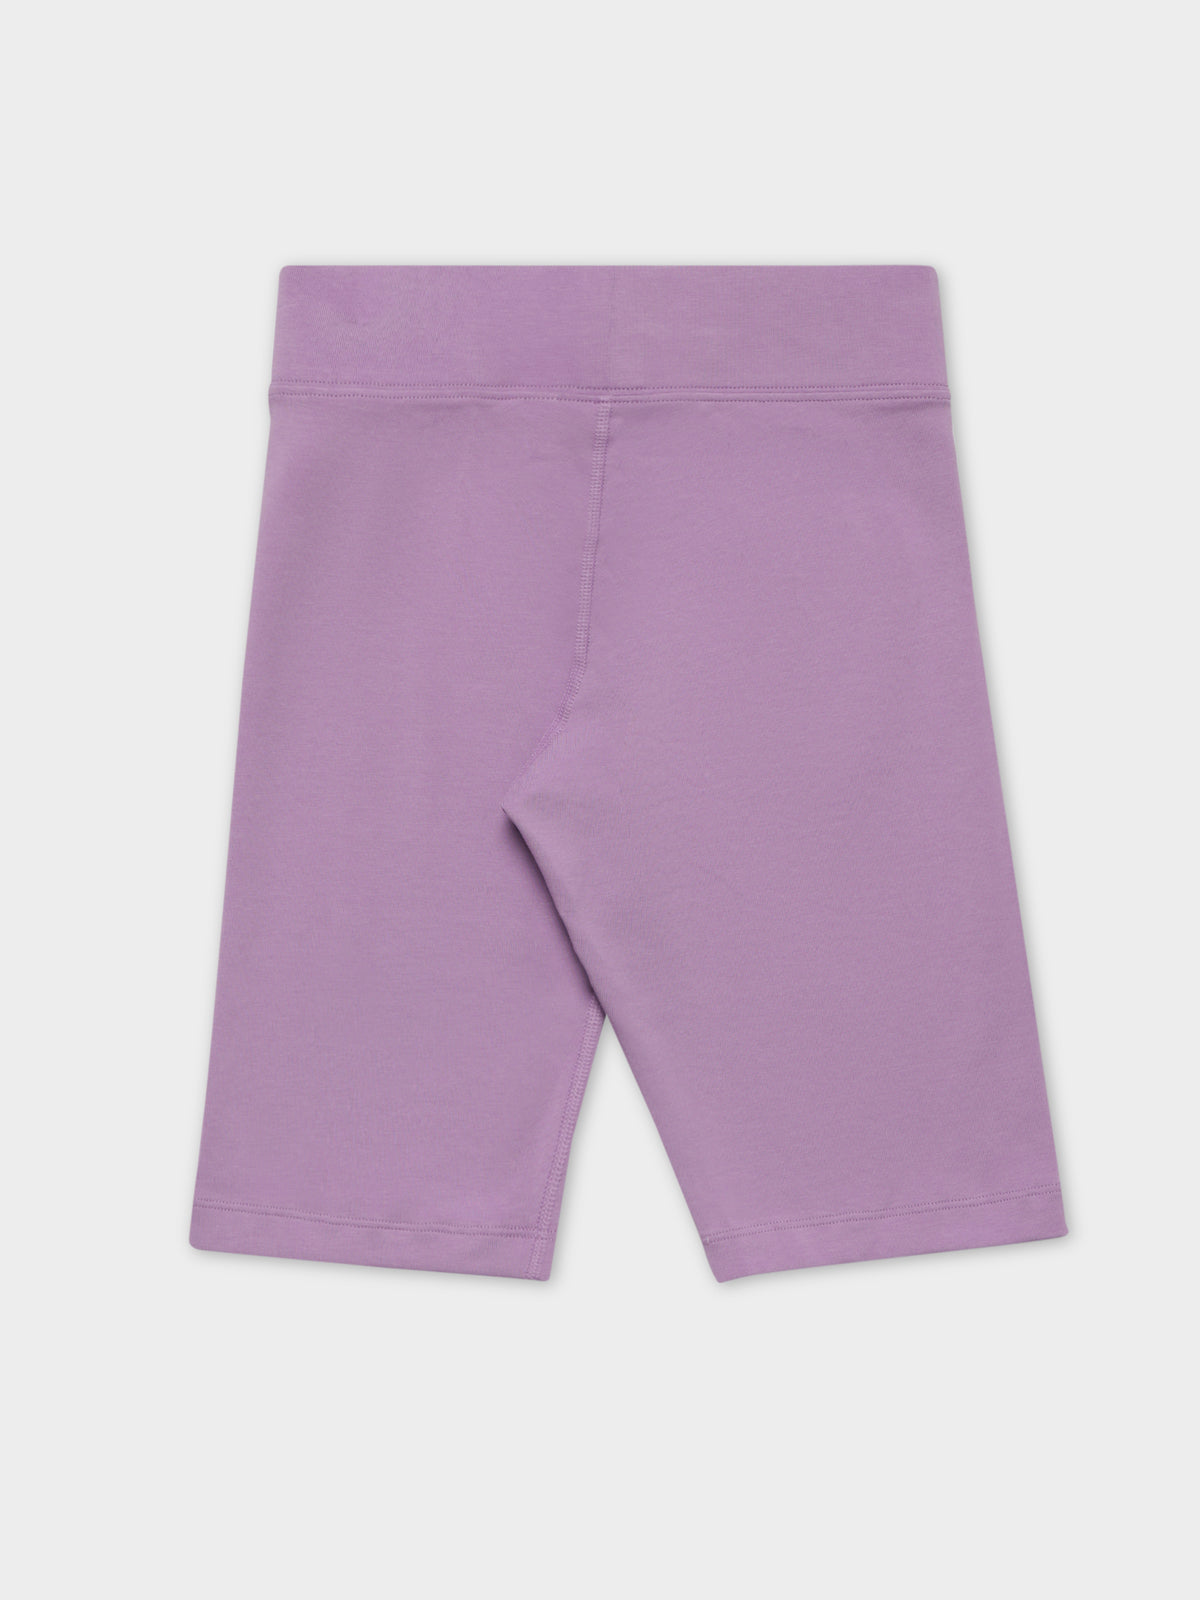 Essentials Bike Shorts in Violet